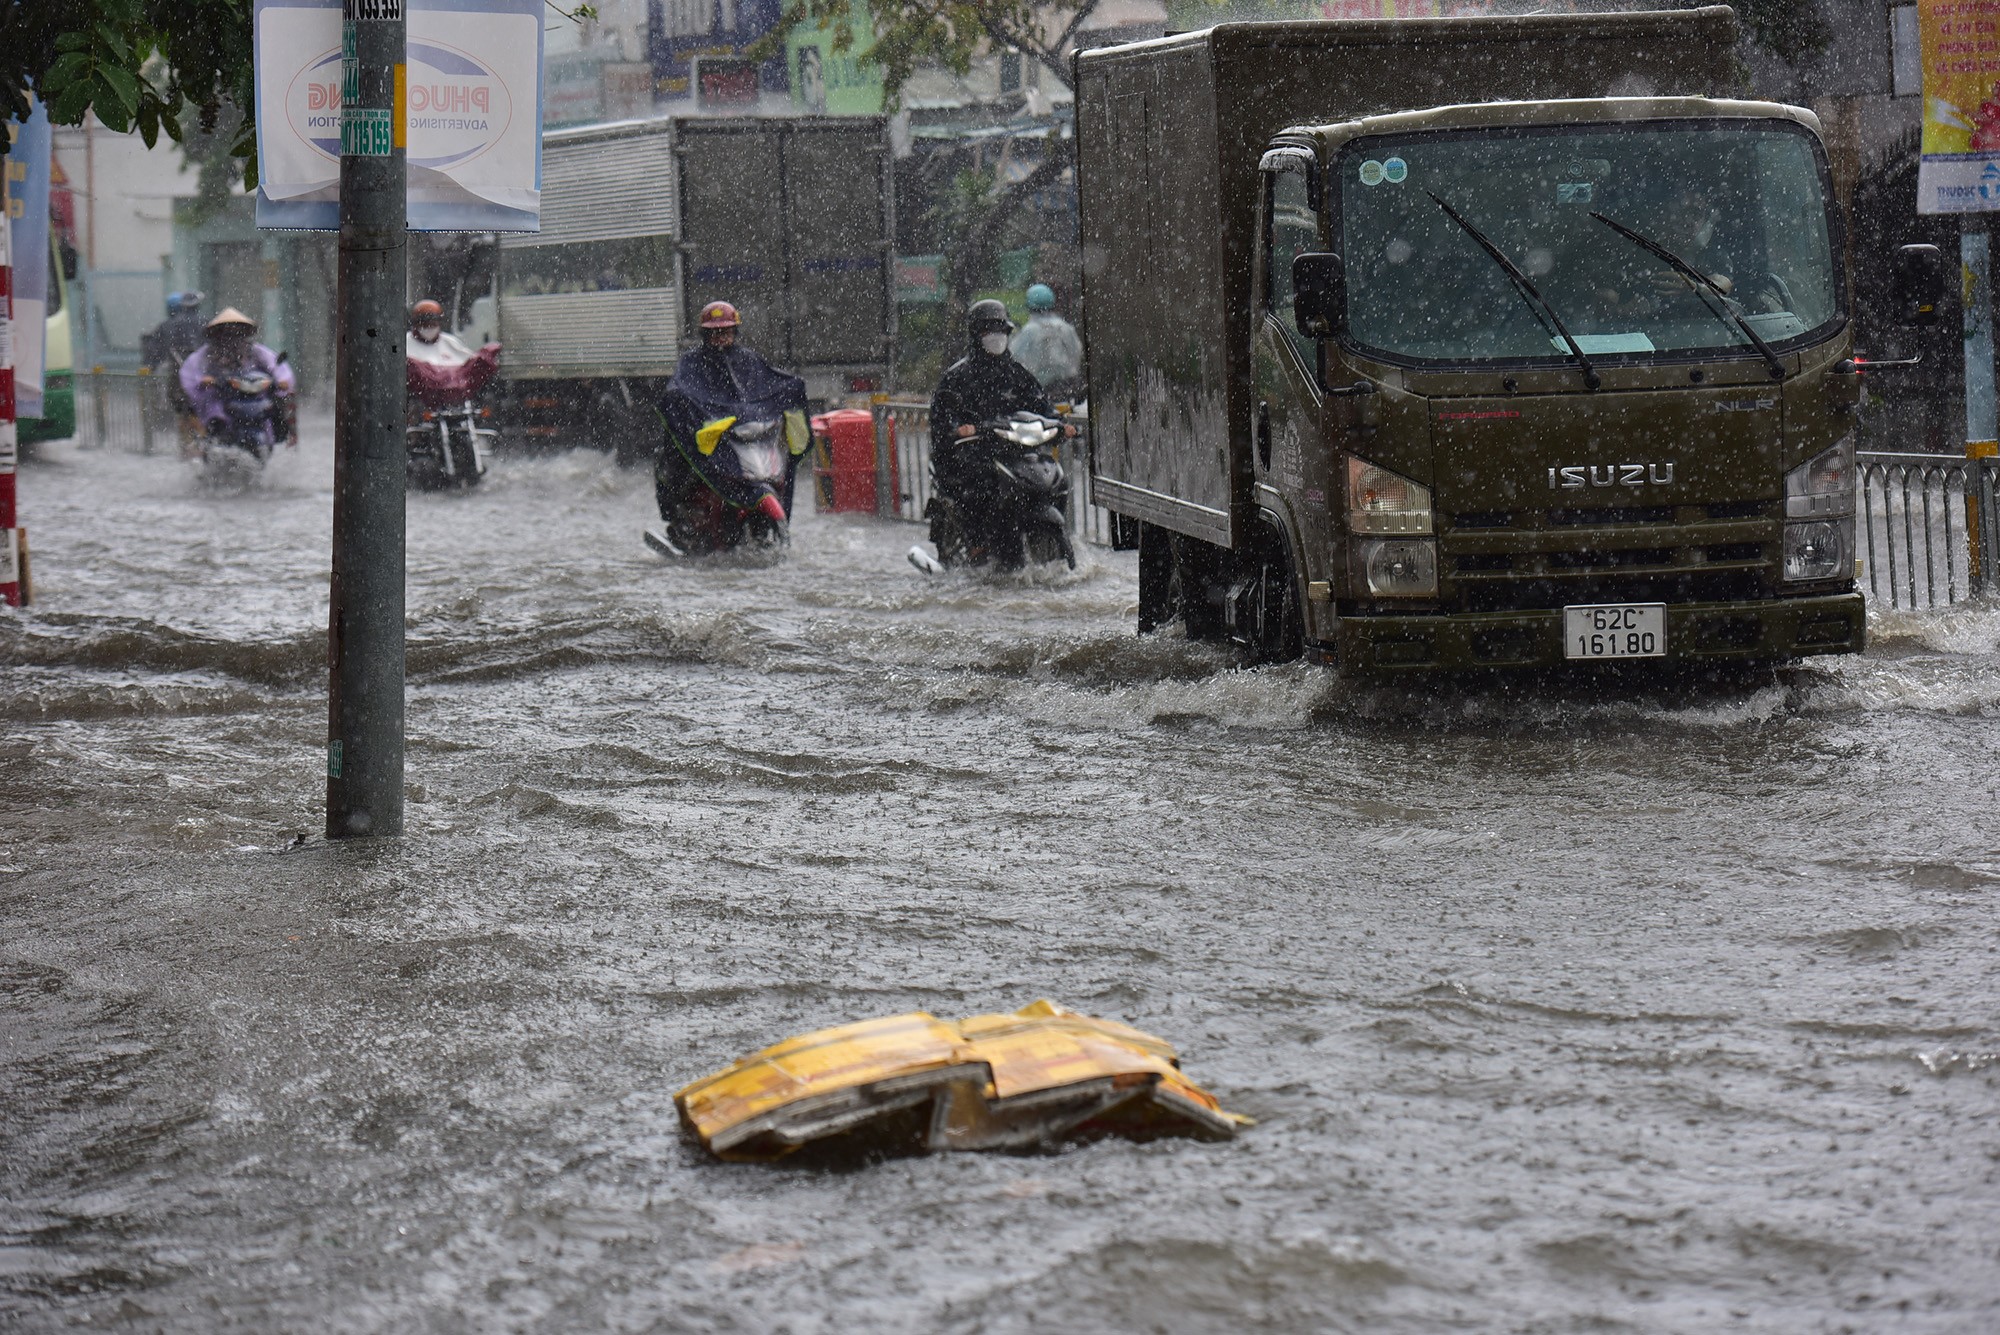 Đường ở TP.HCM ngập sâu trong mưa lớn, nhiều người ngã nhào - 1